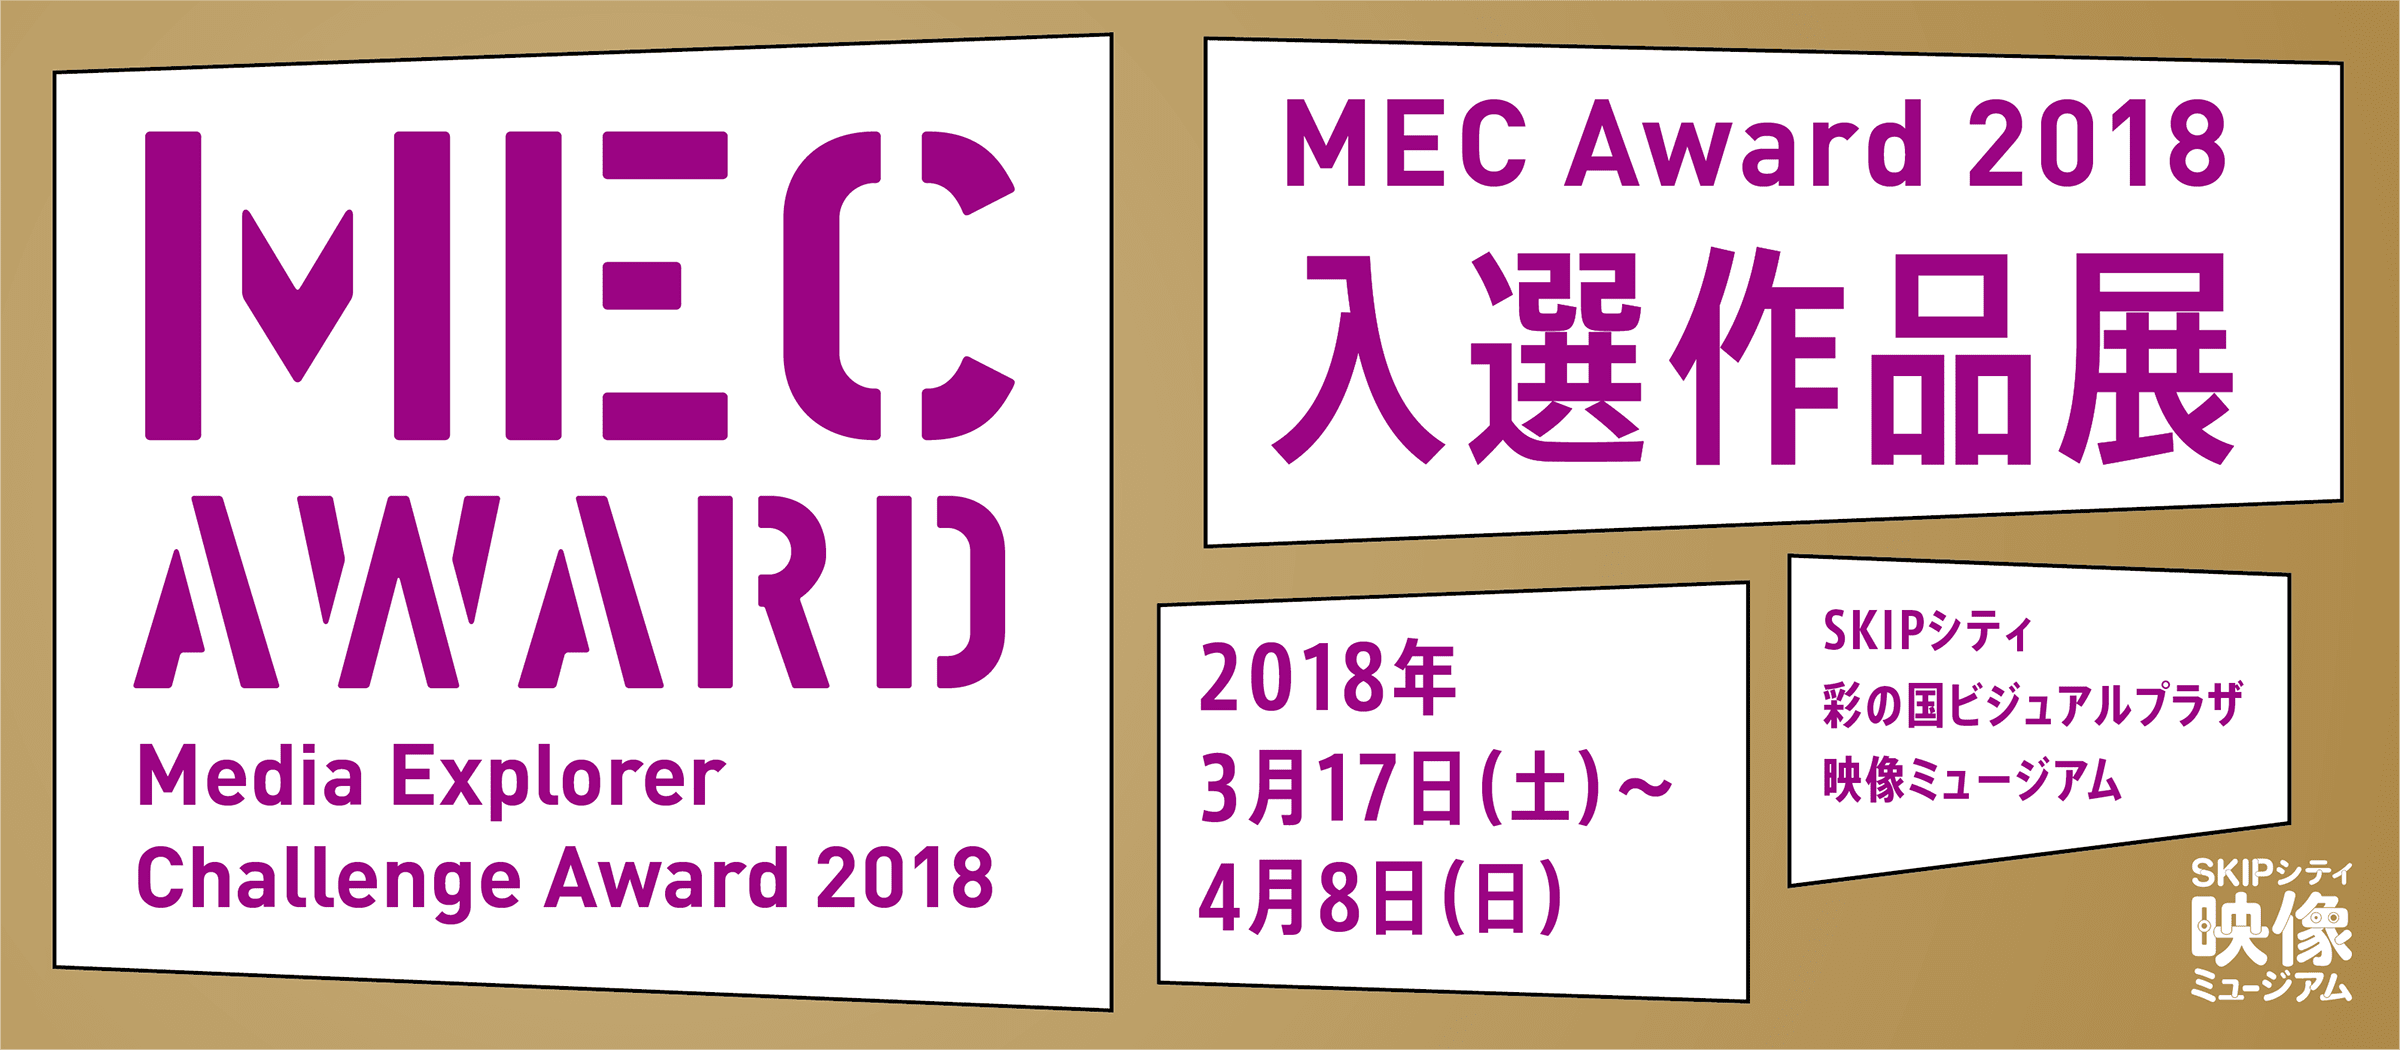 「MEC Award 2018（Media Explorer Challenge Award 2018）」